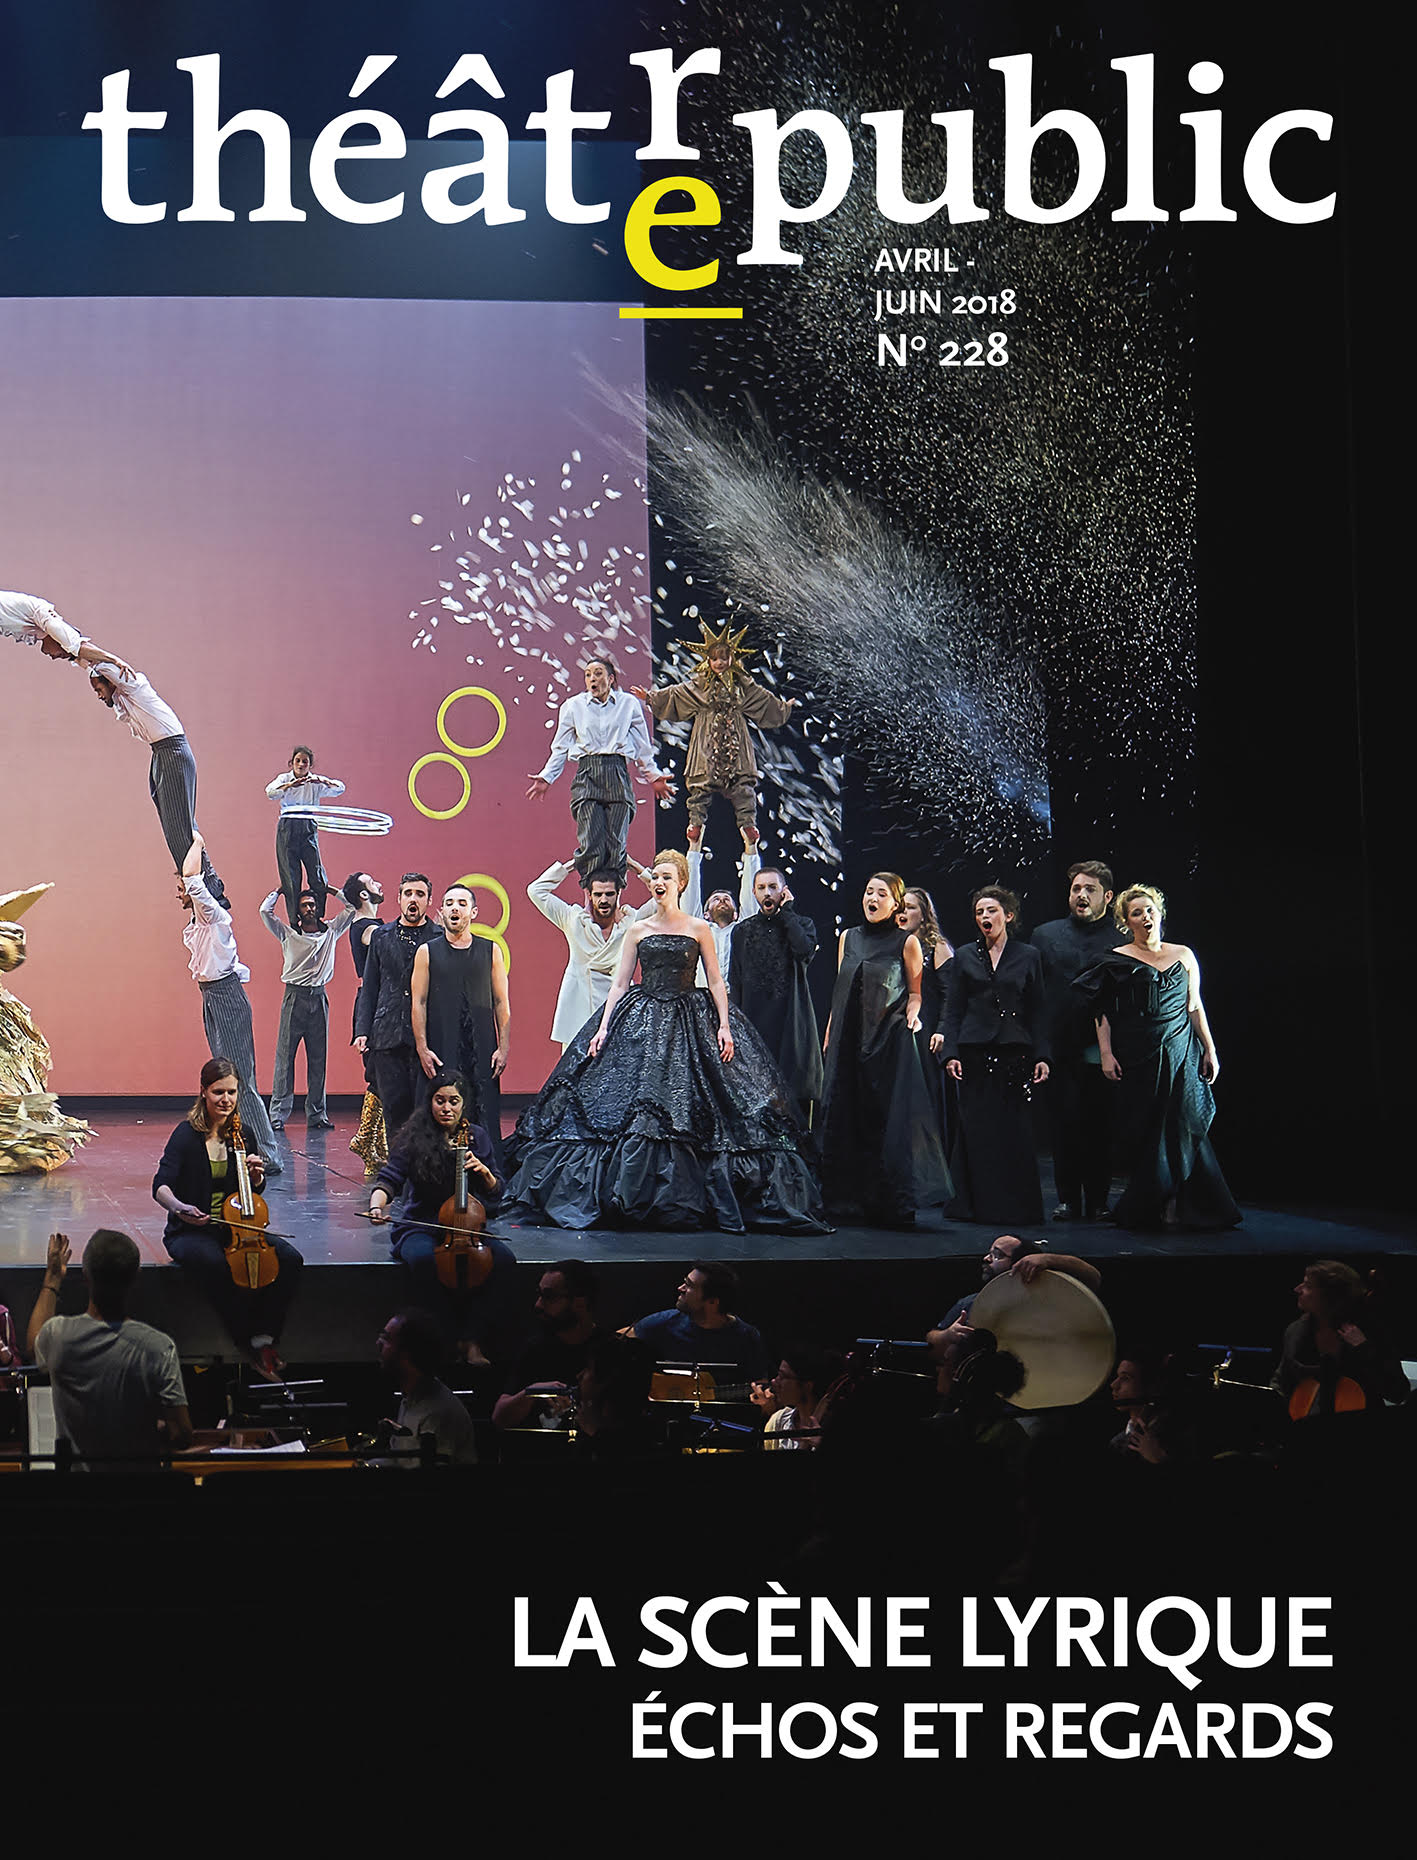 La Scène lyrique | Numéro 228 | Théâtre/Public